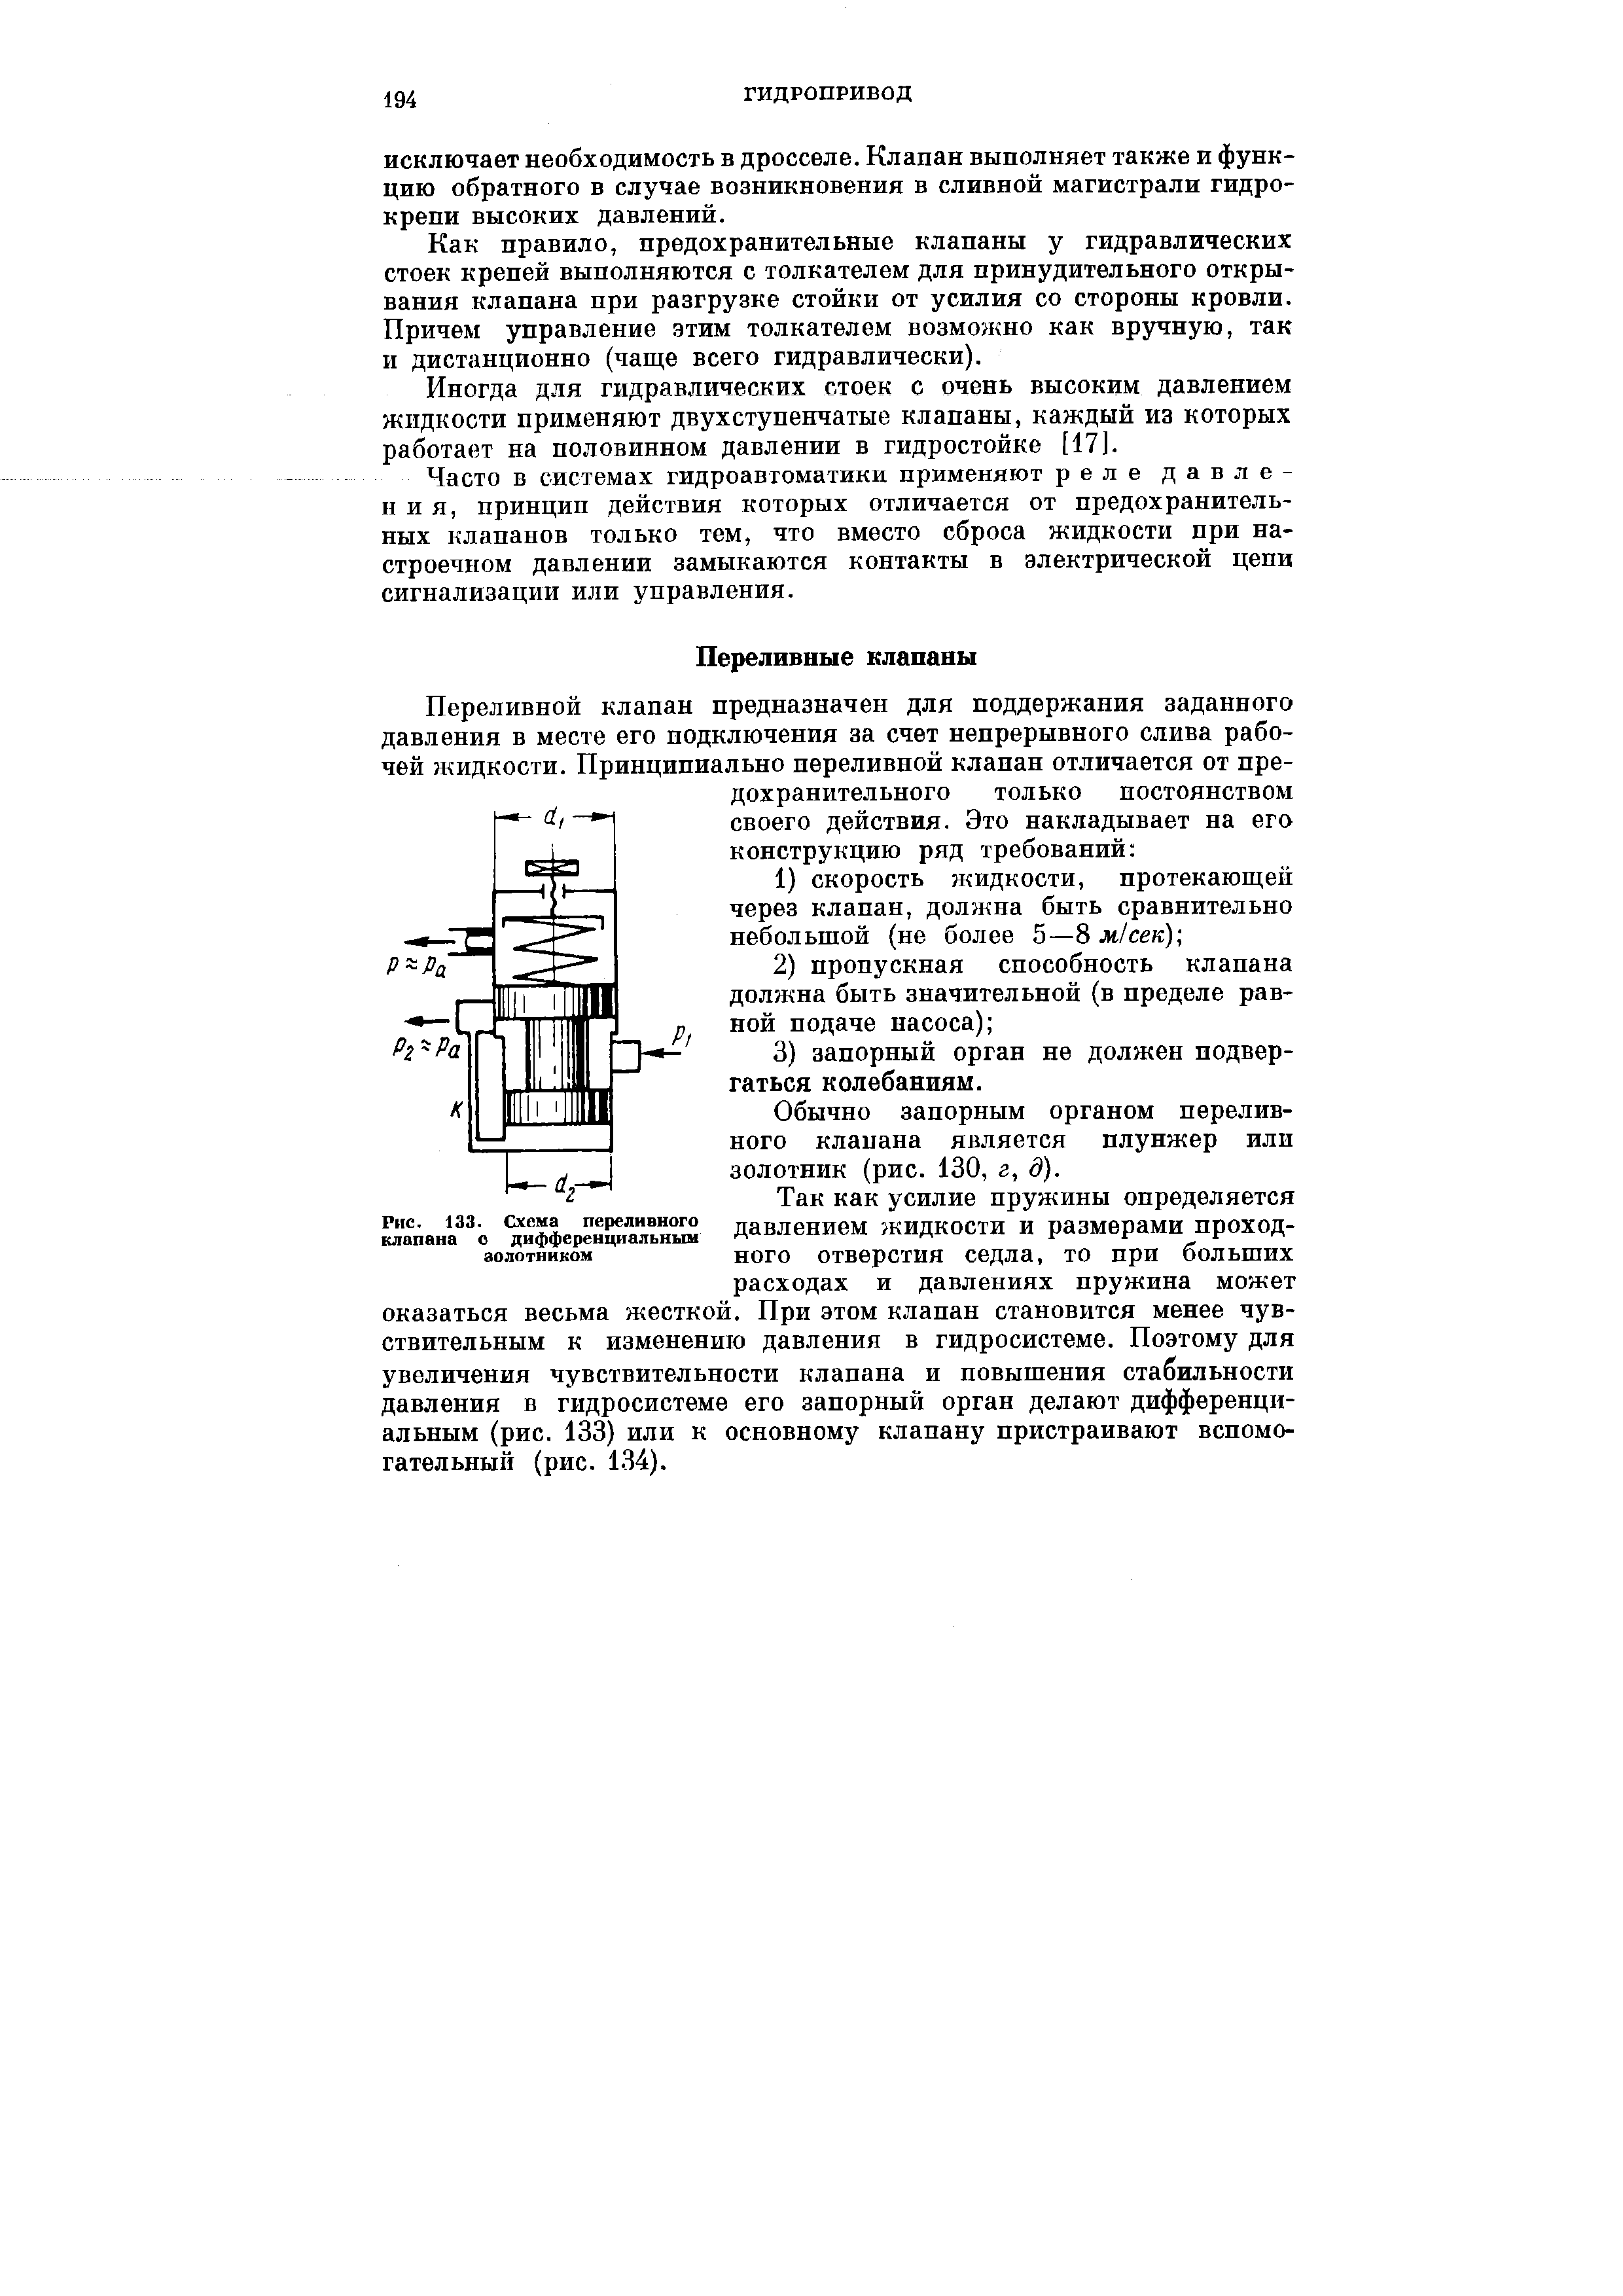 Рис. 133. Схема переливного клапана о дифференциальным золотником
